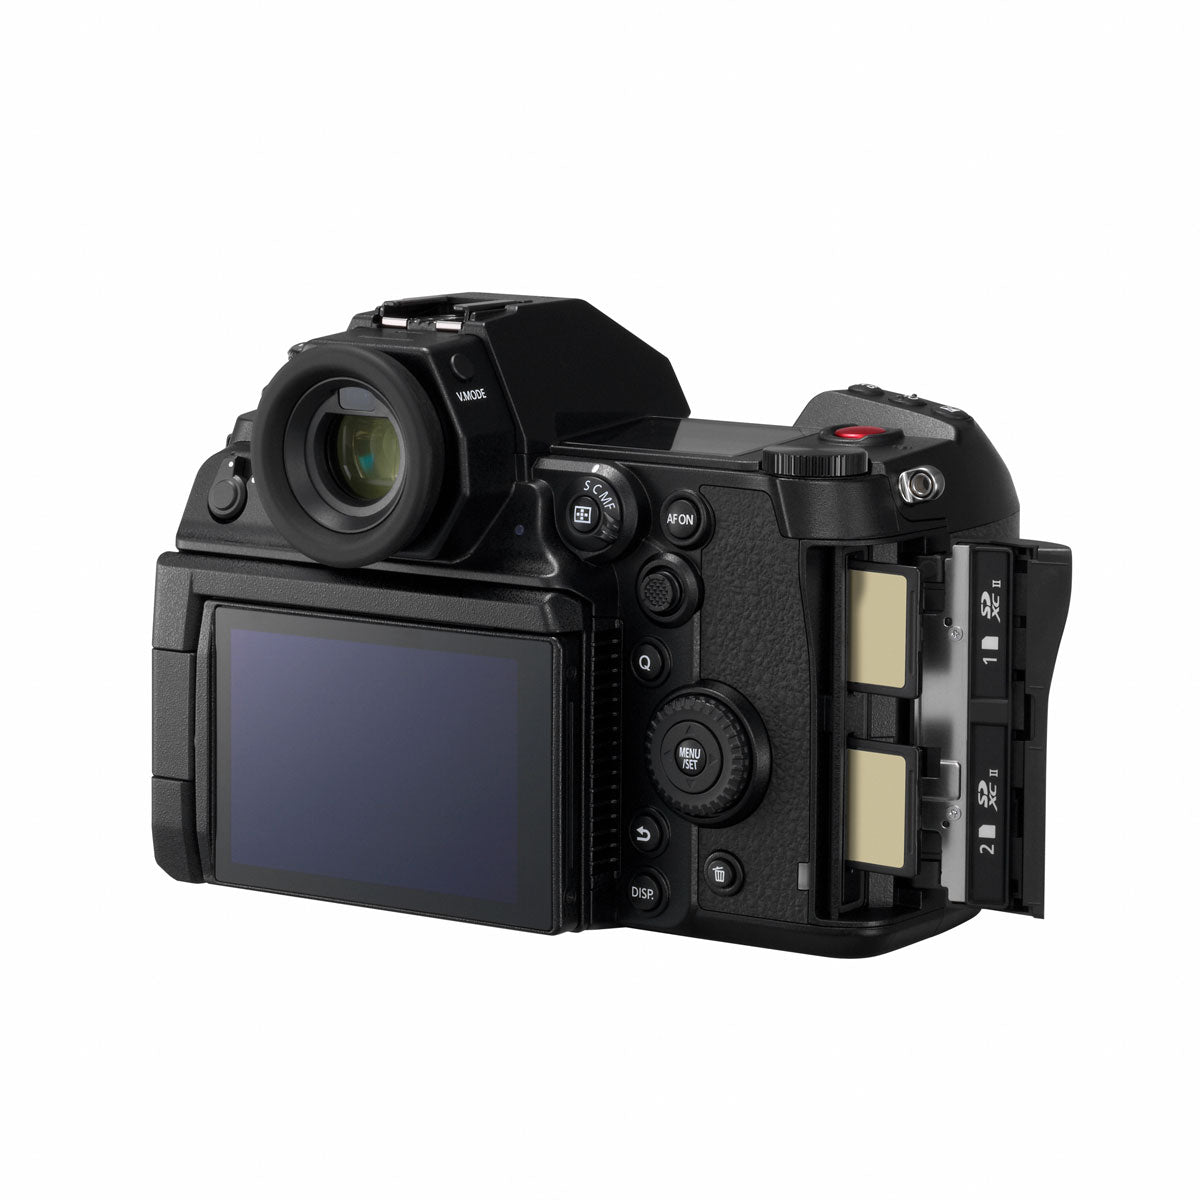 Panasonic Lumix S1H Full Frame Mirrorless Camera Body *OPEN BOX*